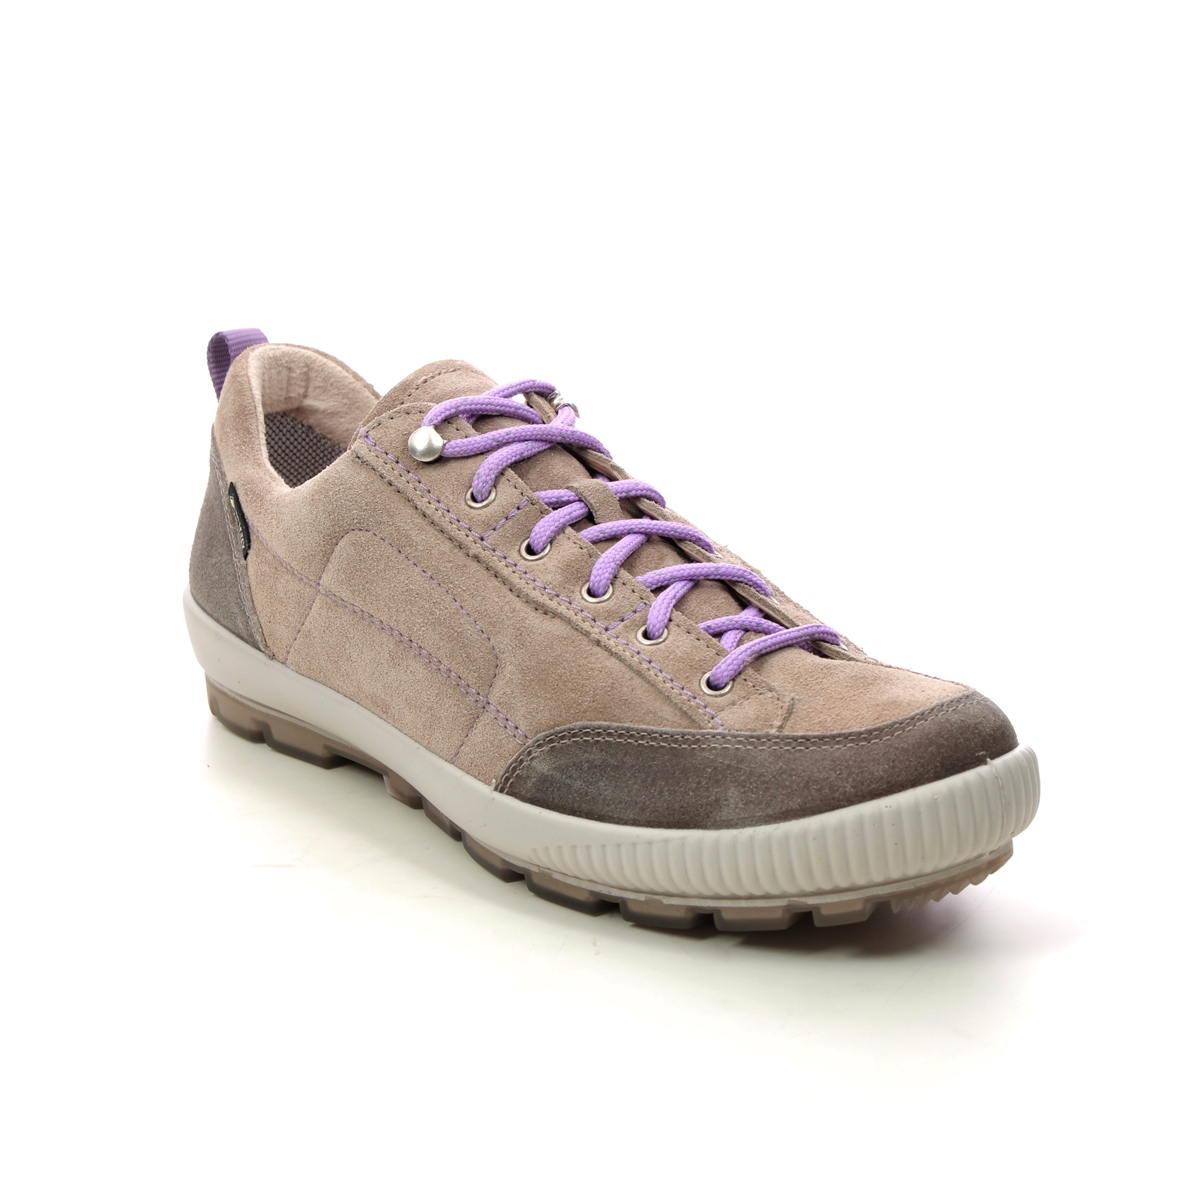 Legero Tanaro Trek Gtx Beige Leather Womens Walking Shoes 2000210-4500 In Size 4.5 In Plain Beige Leather